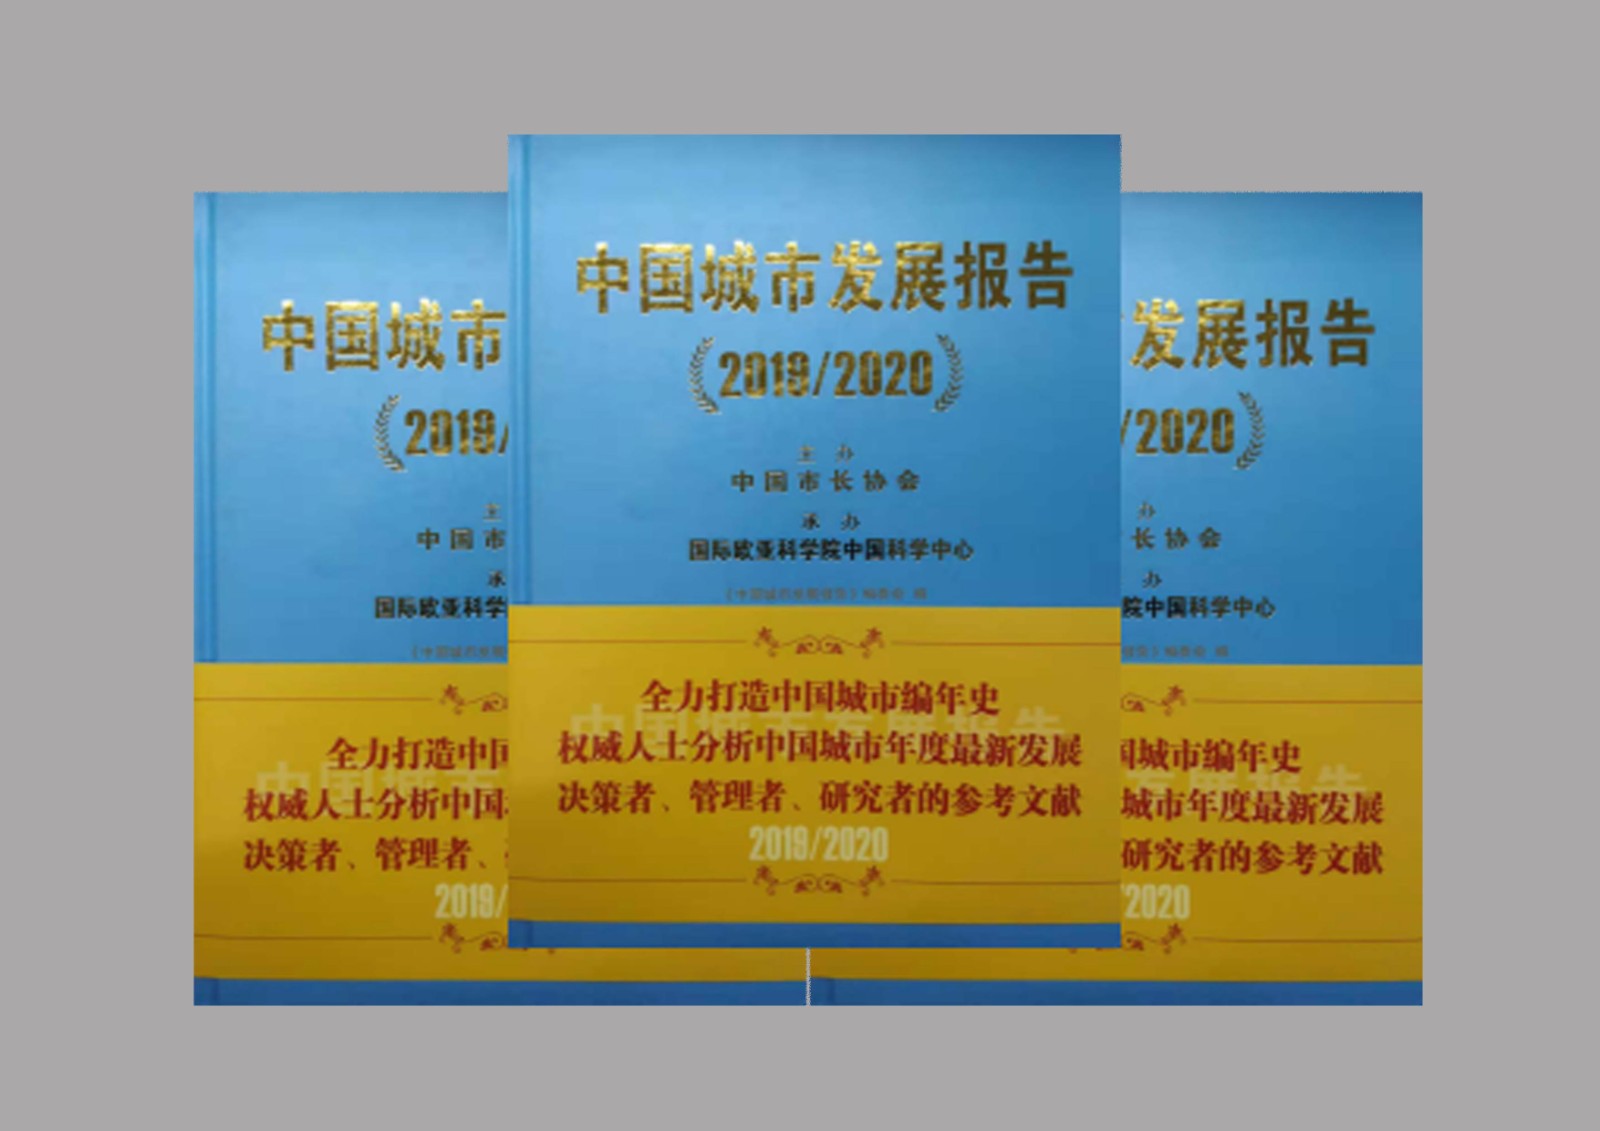 《中国城市发展报告2019/2020》隆重出版